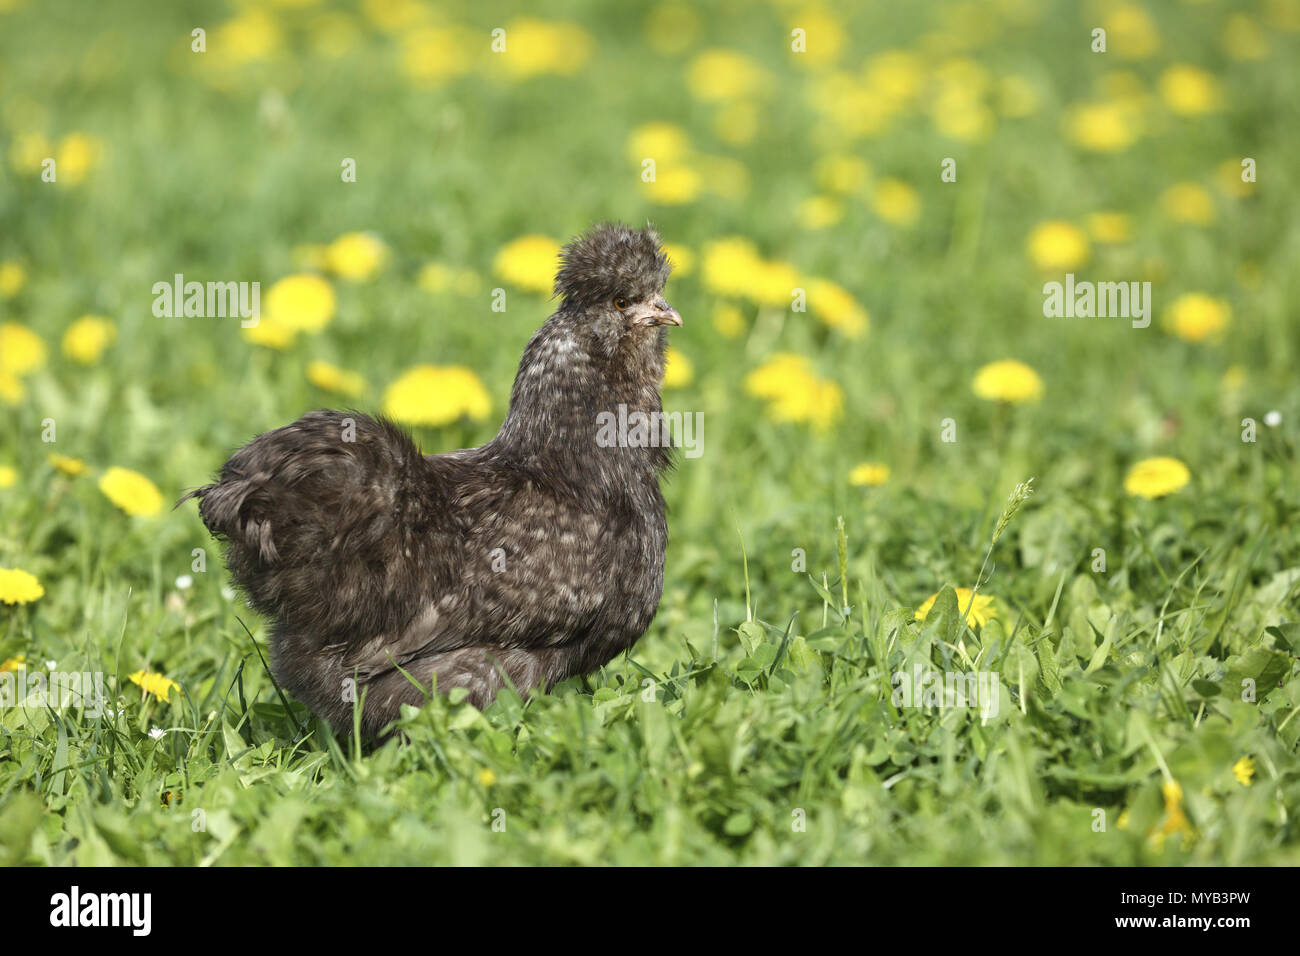 Poulet domestique, race : Silkie, soyeux. Poule dans une prairie avec des fleurs de pissenlit. Allemagne Banque D'Images